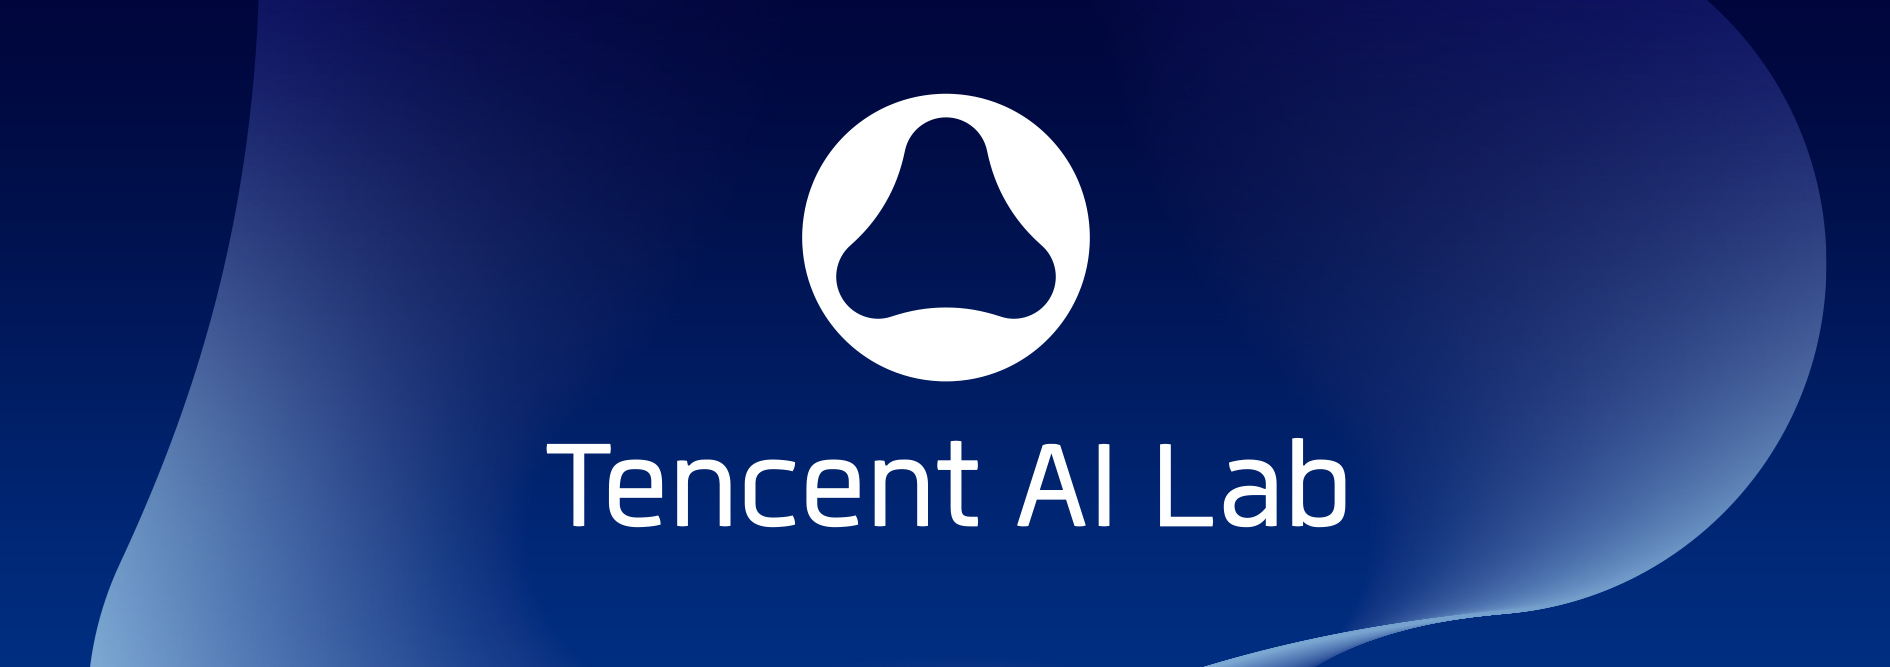 Tencent AI Lab品牌形象设计